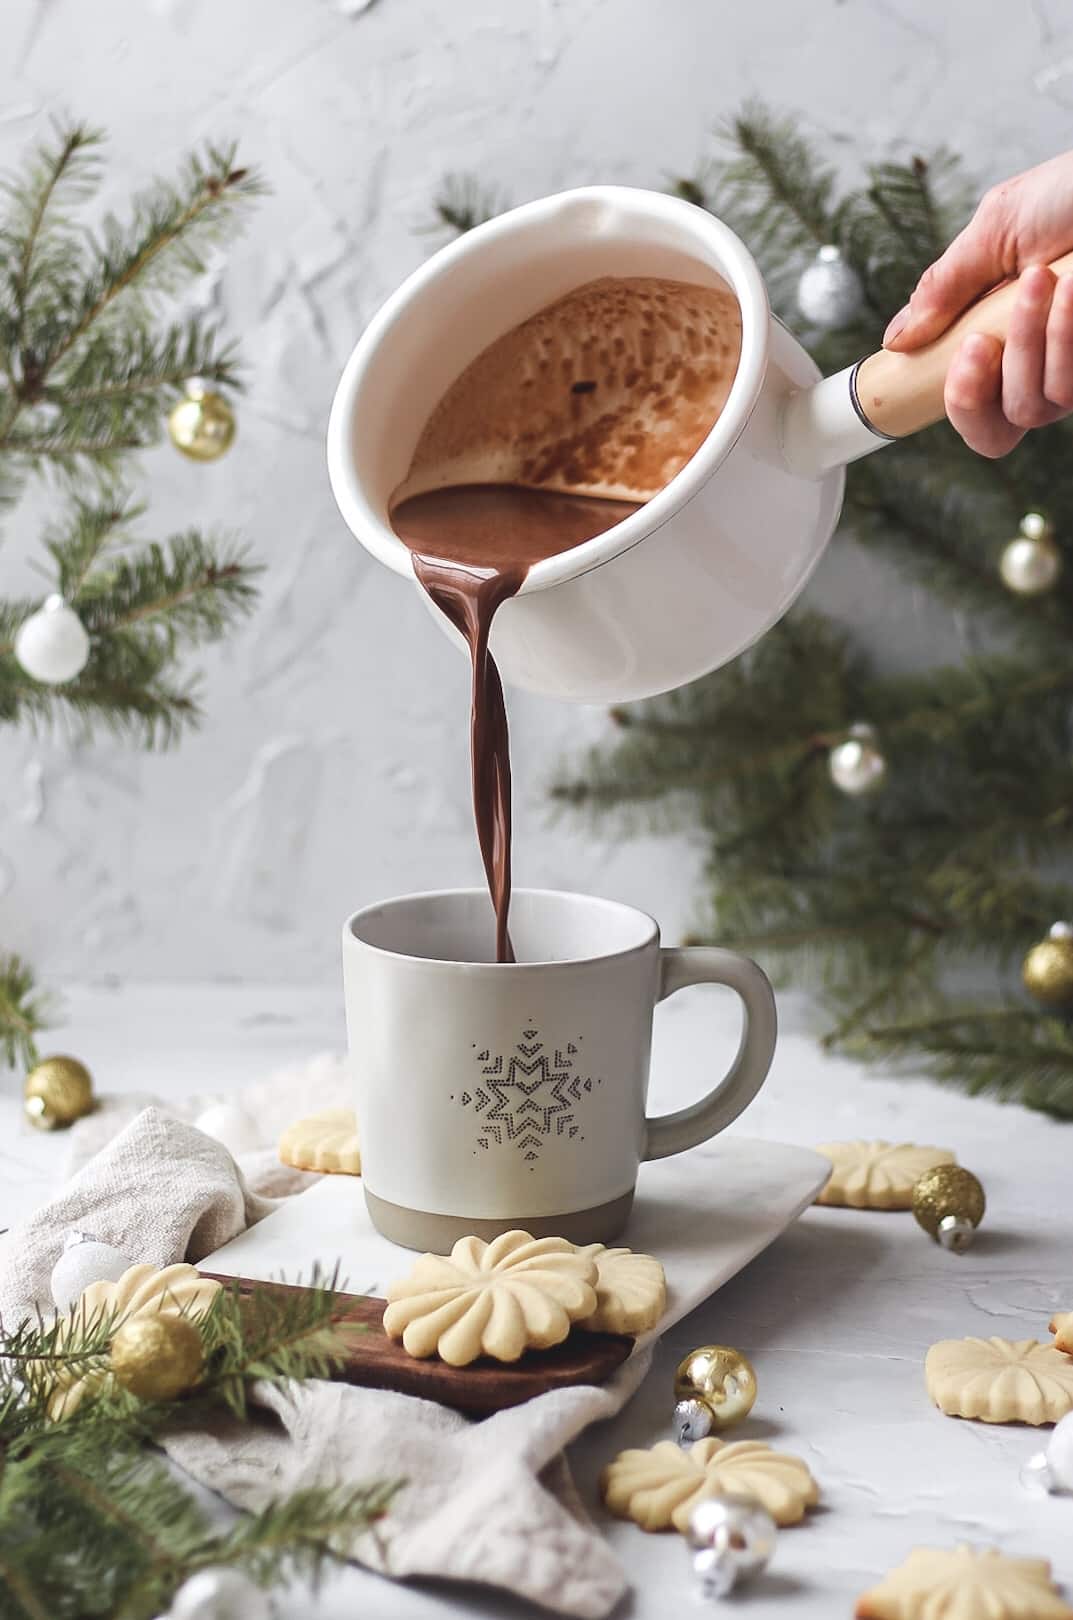 homemade cinnamon hot chocolate being poured into mug